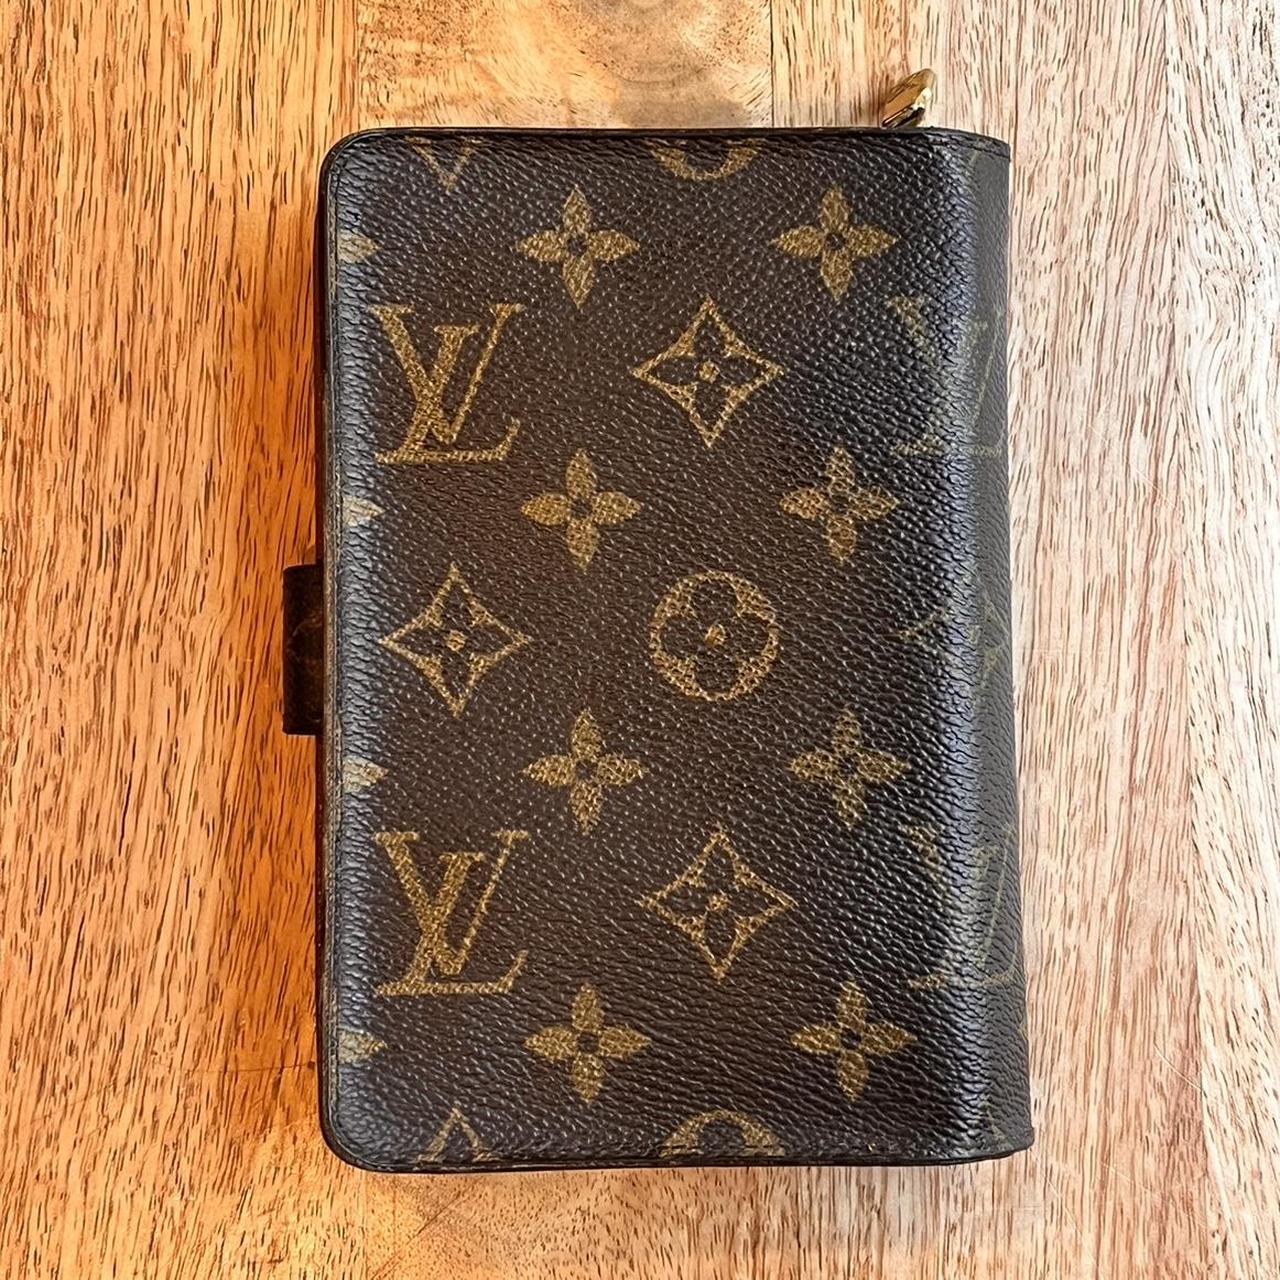 Authentic lv Louis Vuitton porte papier passport wallet, Women's